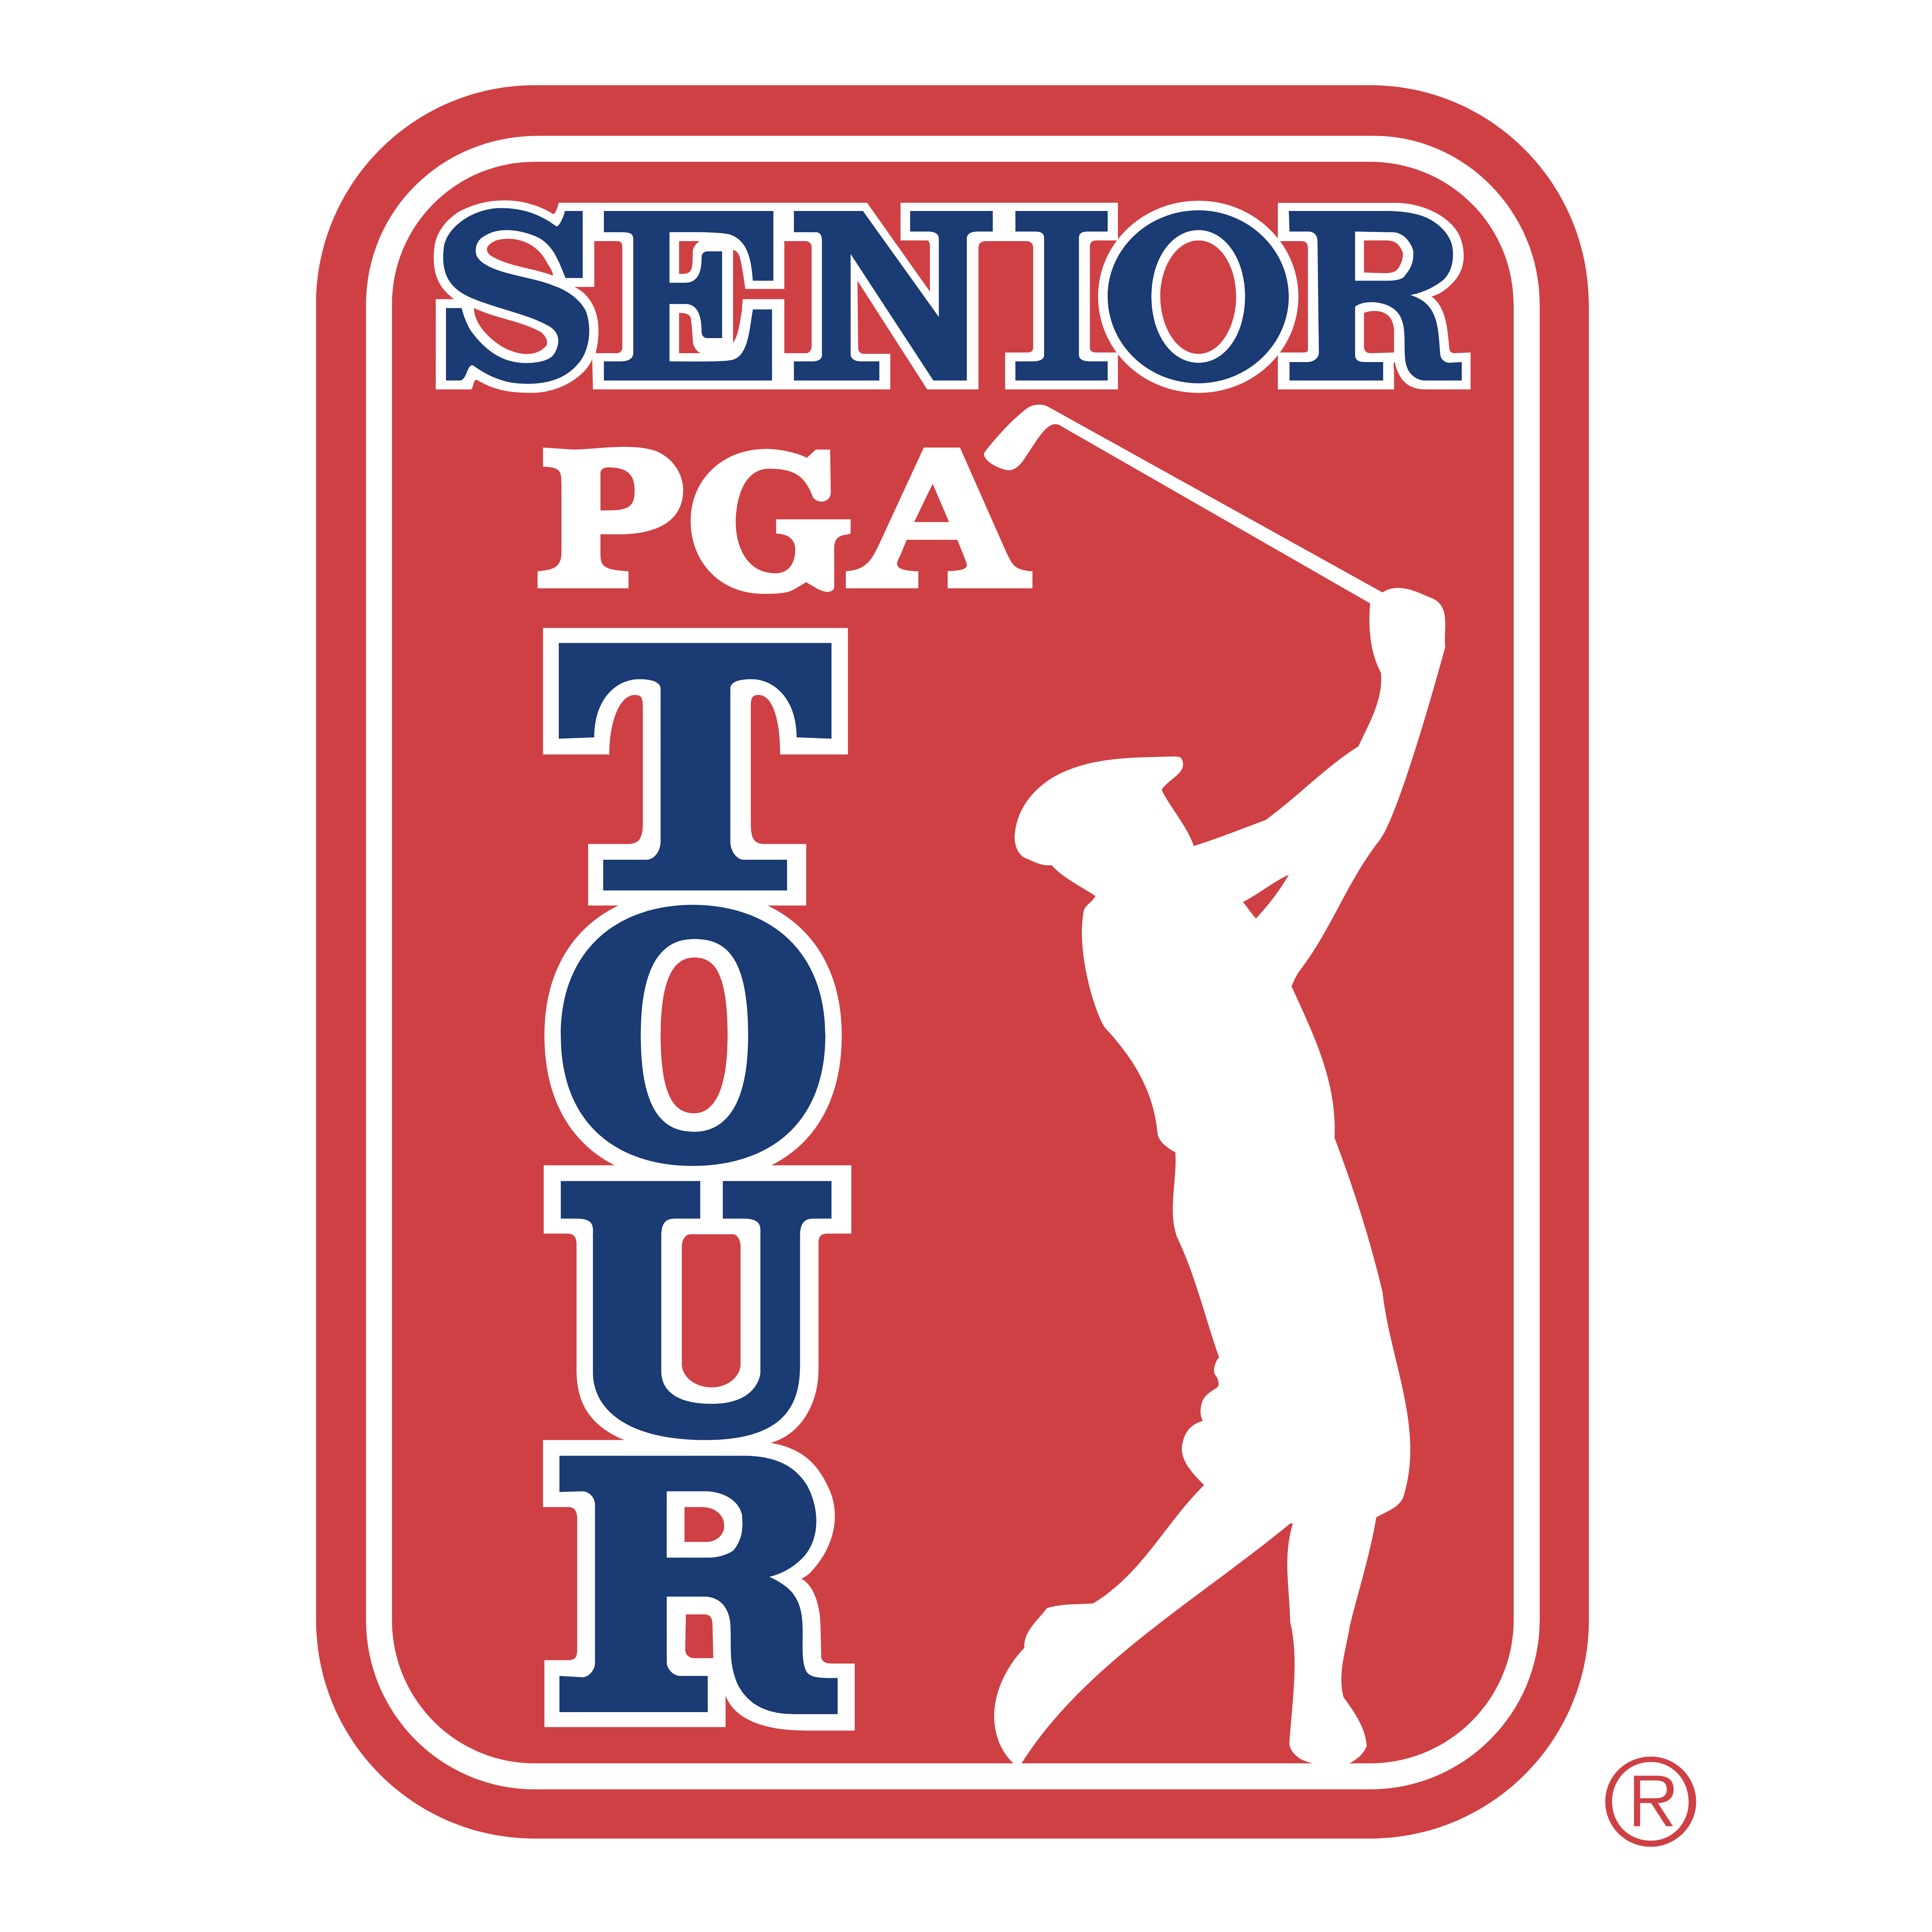 pga golf senior tour